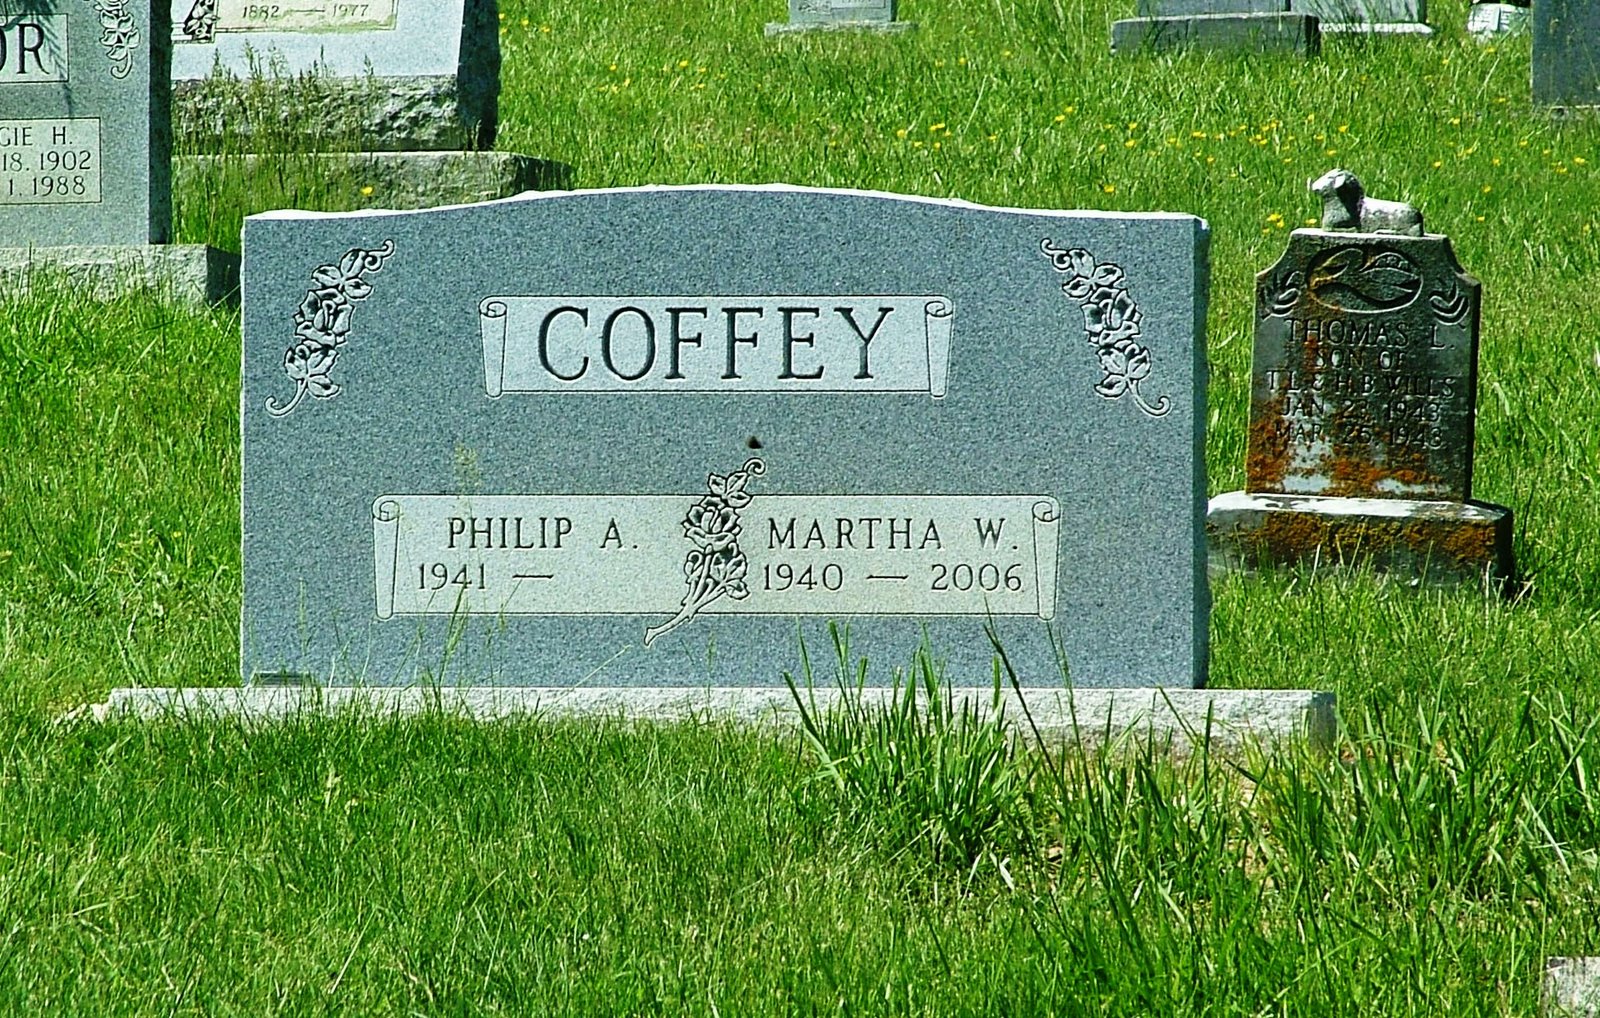 [GH+Philip+A+&+Martha+W+Coffey+1941-.jpg]